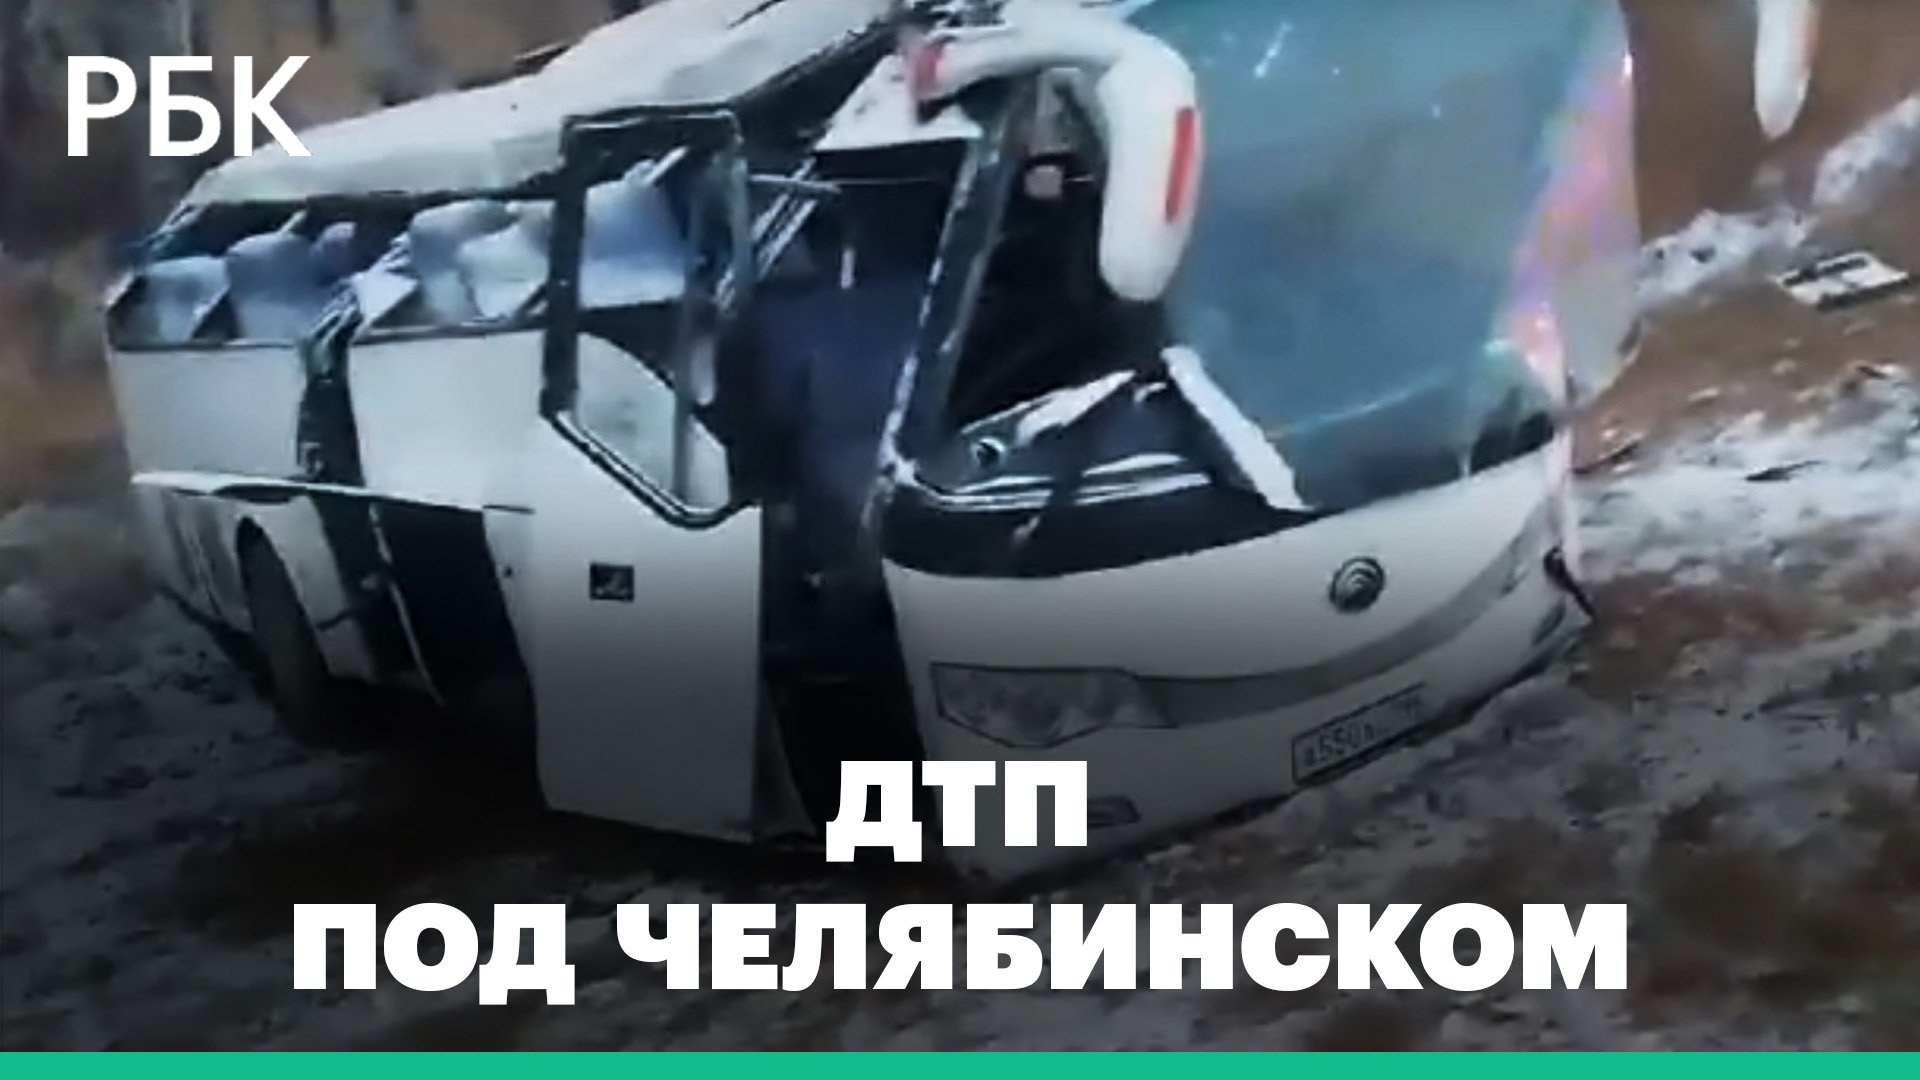 Пассажирский автобус опрокинулся под Челябинском, есть пострадавшие